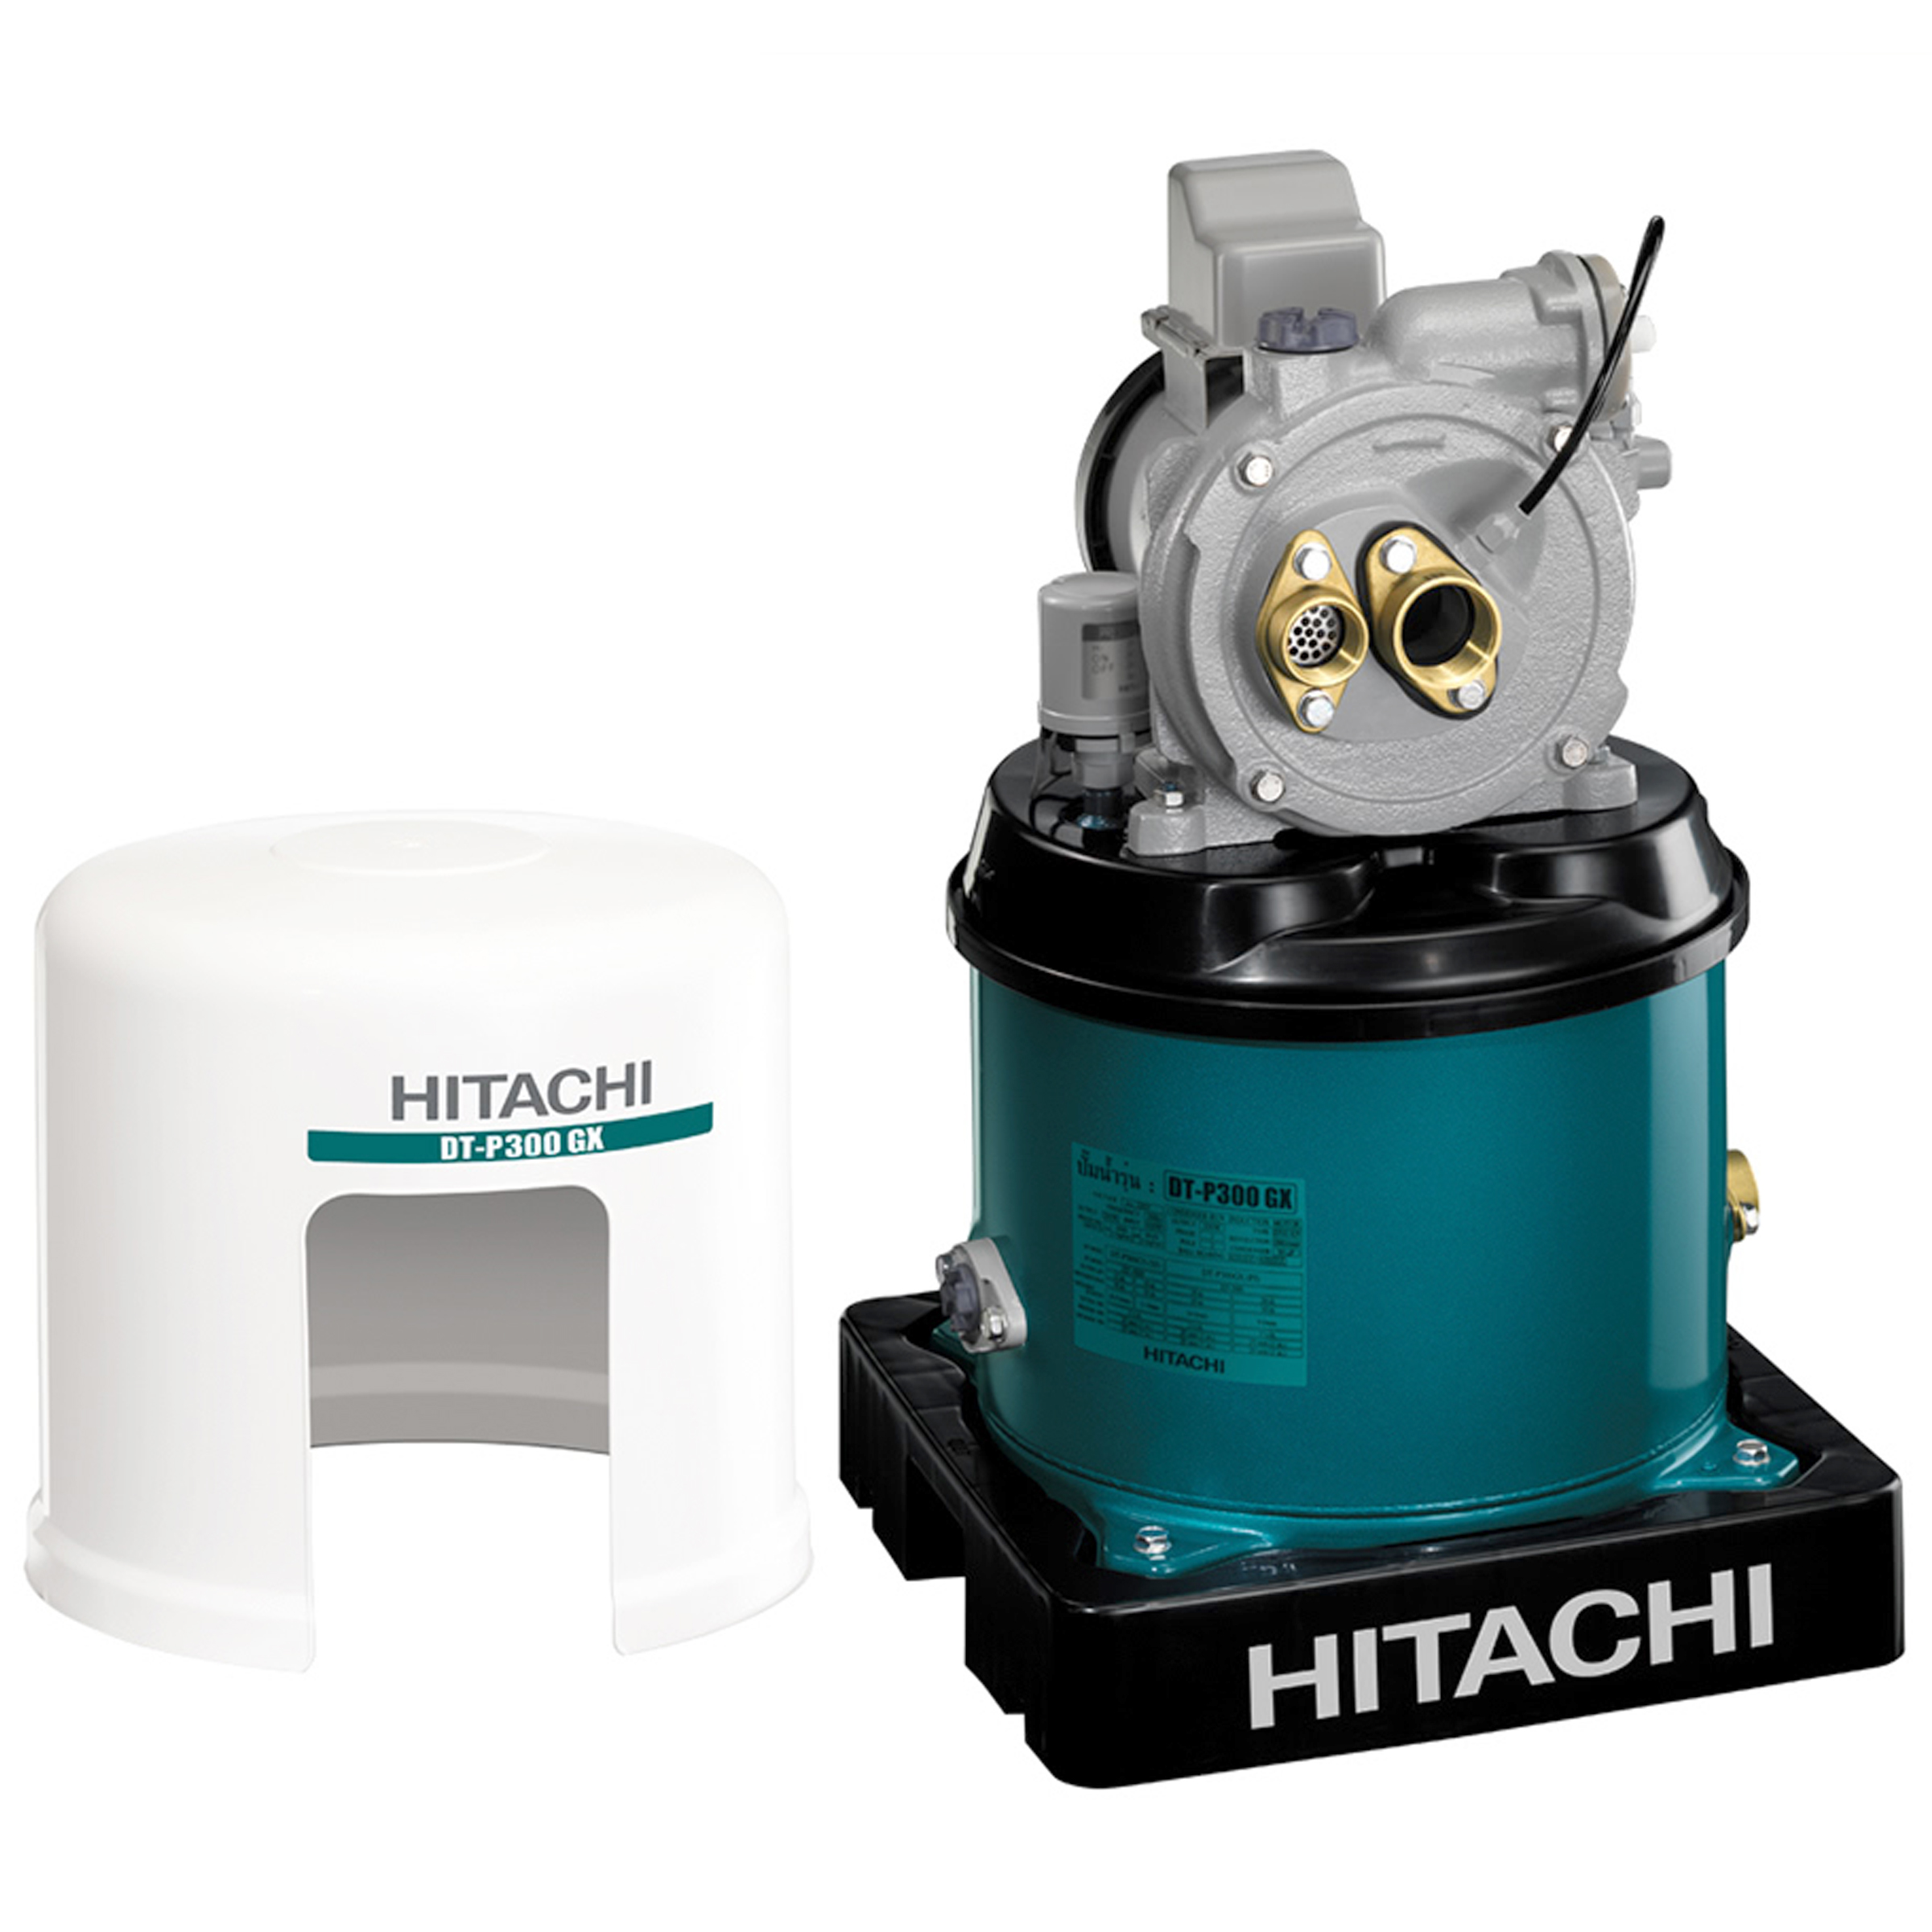 Hitachi Deep Well Pump 300W, 20L/min, DT-P300GX(PJ) - Click Image to Close